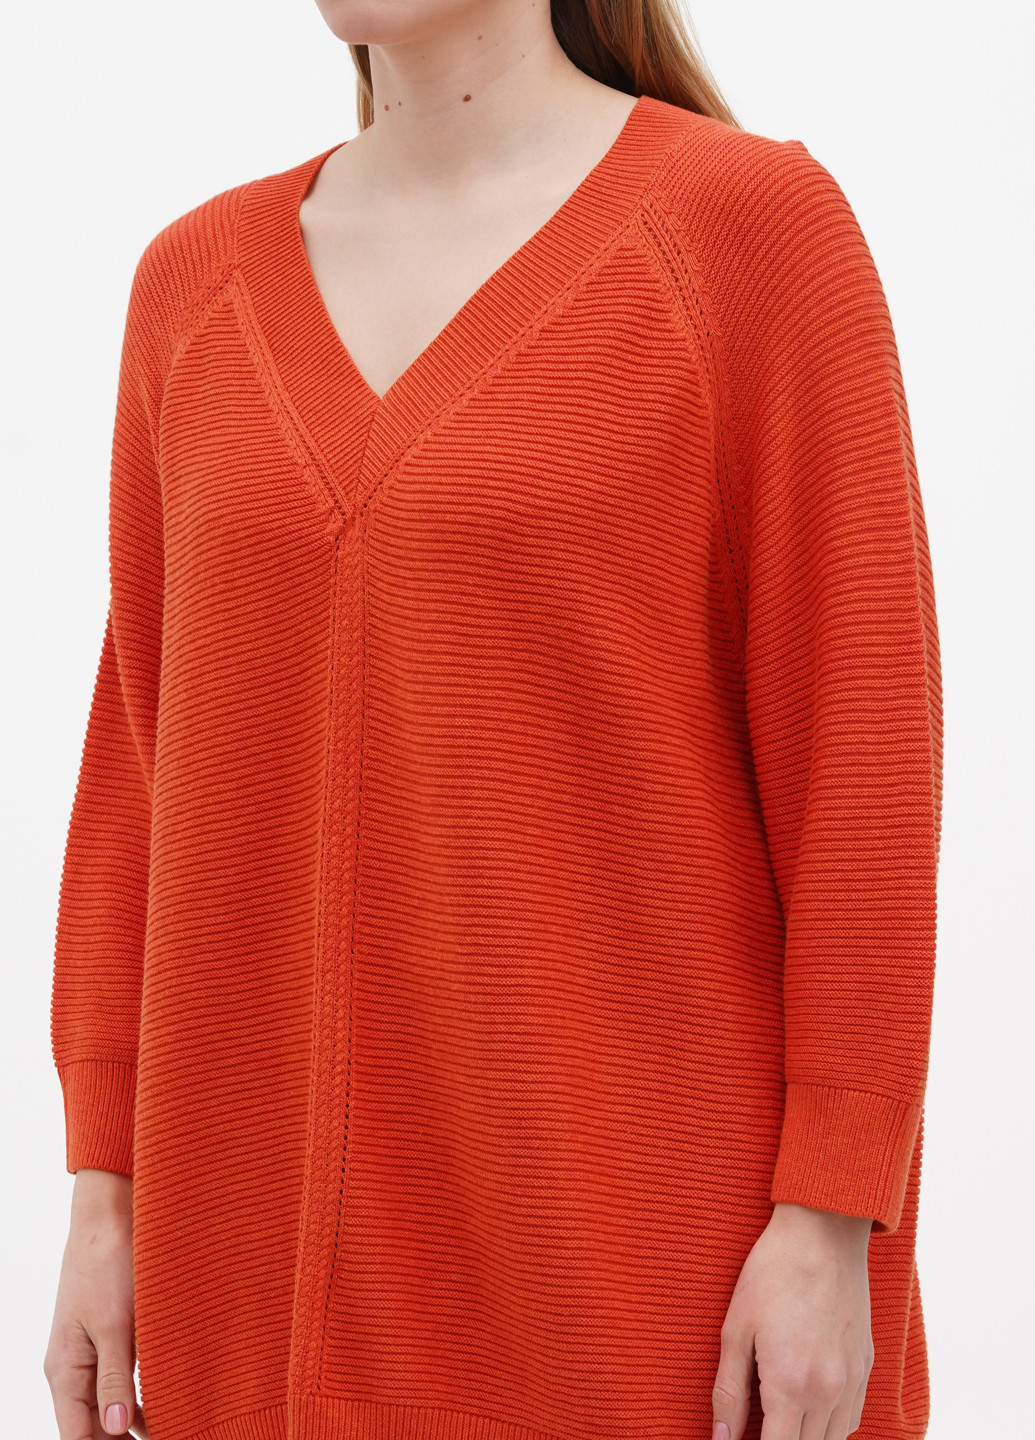 Оранжевый демисезонный пуловер пуловер S.Oliver